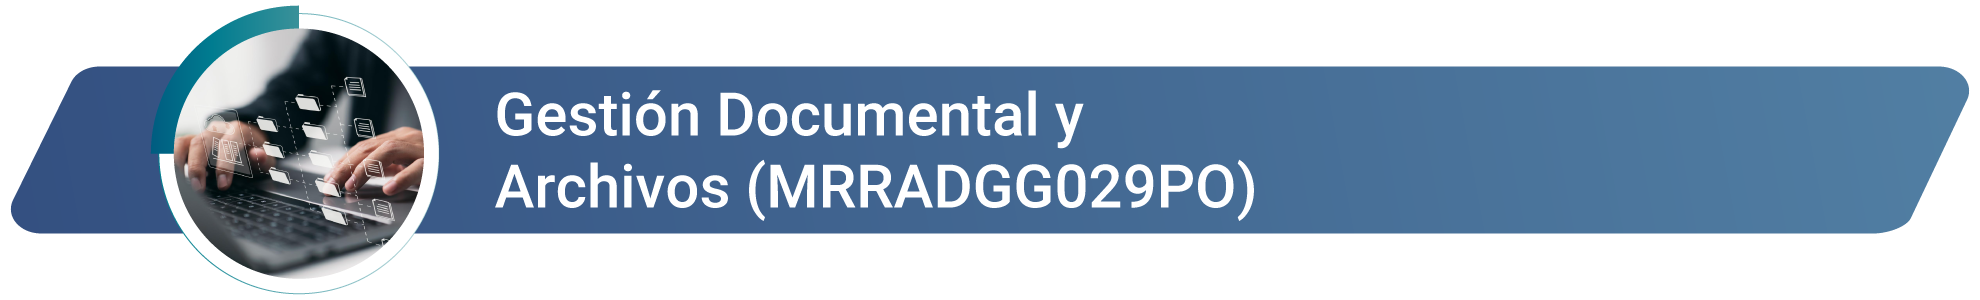 MRRADGG029PO - Gestión Documental y Archivos